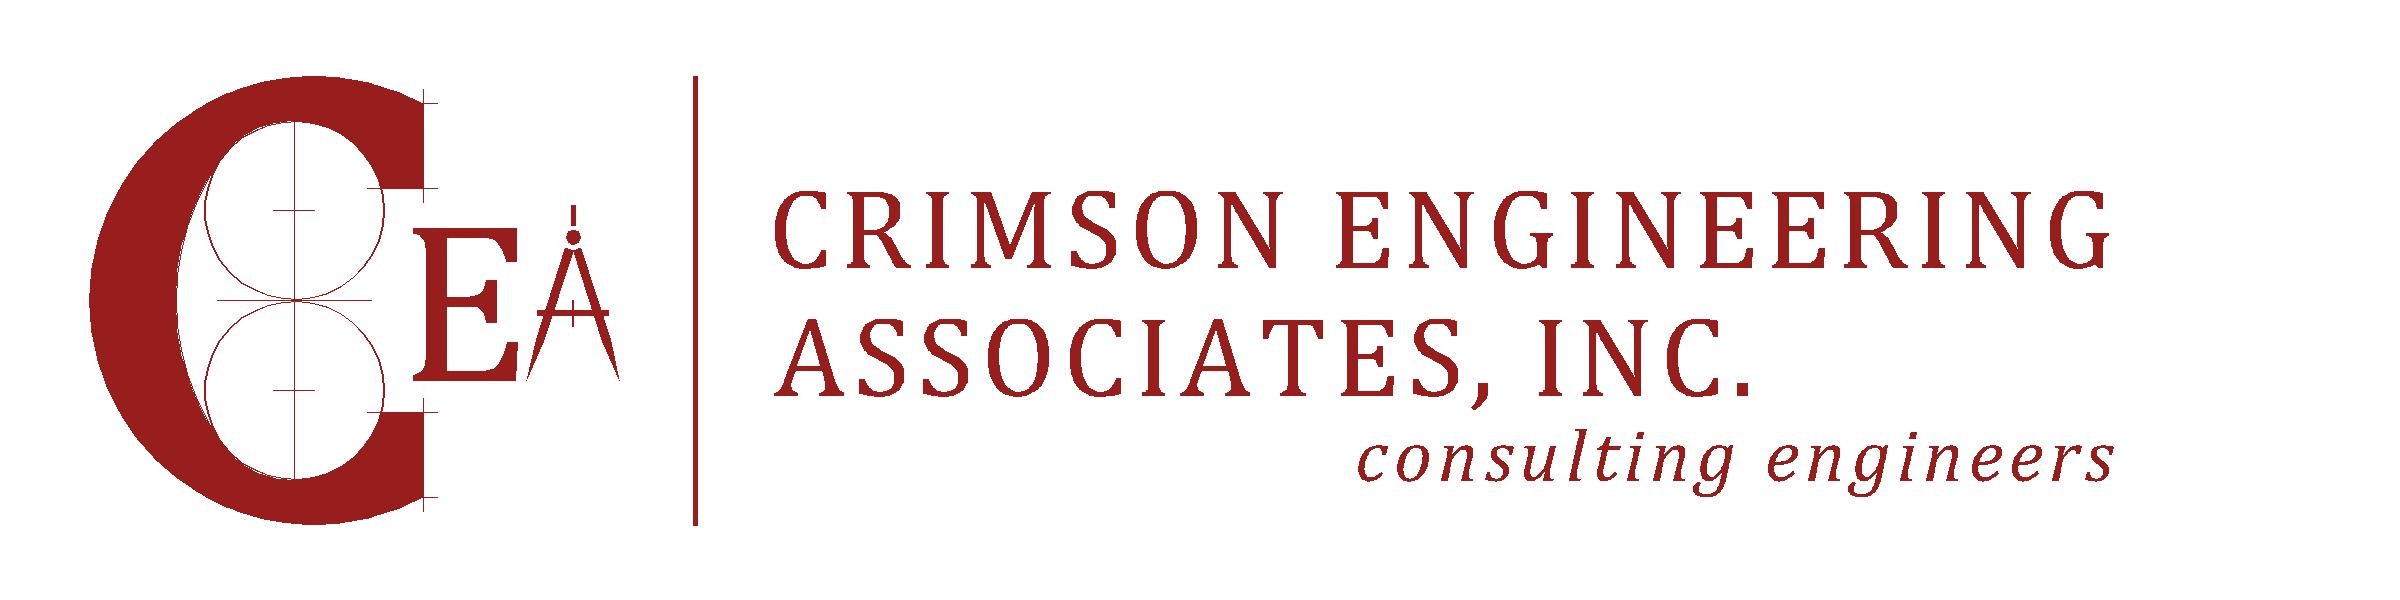 crimson_engineering_associates_inc__cover